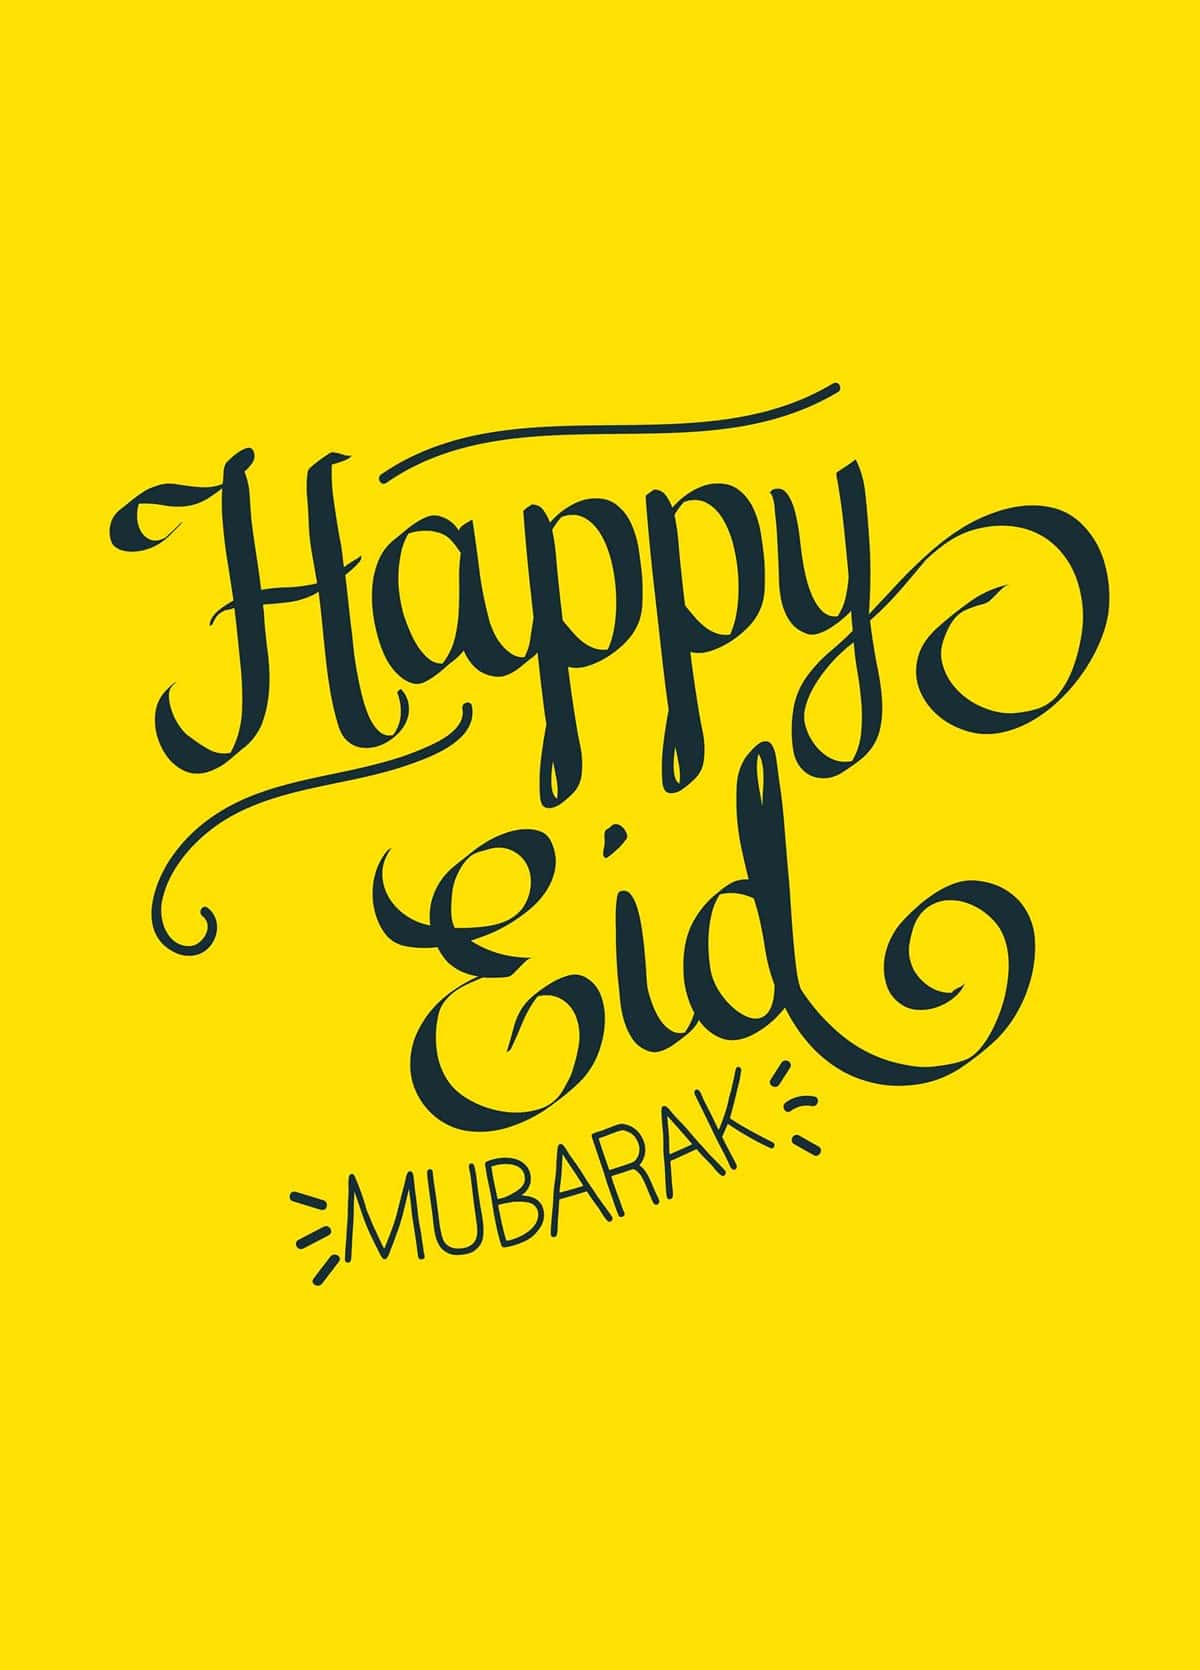 Happy Eid Mubarak Wallpaper - KoLPaPer - Awesome Free HD ...